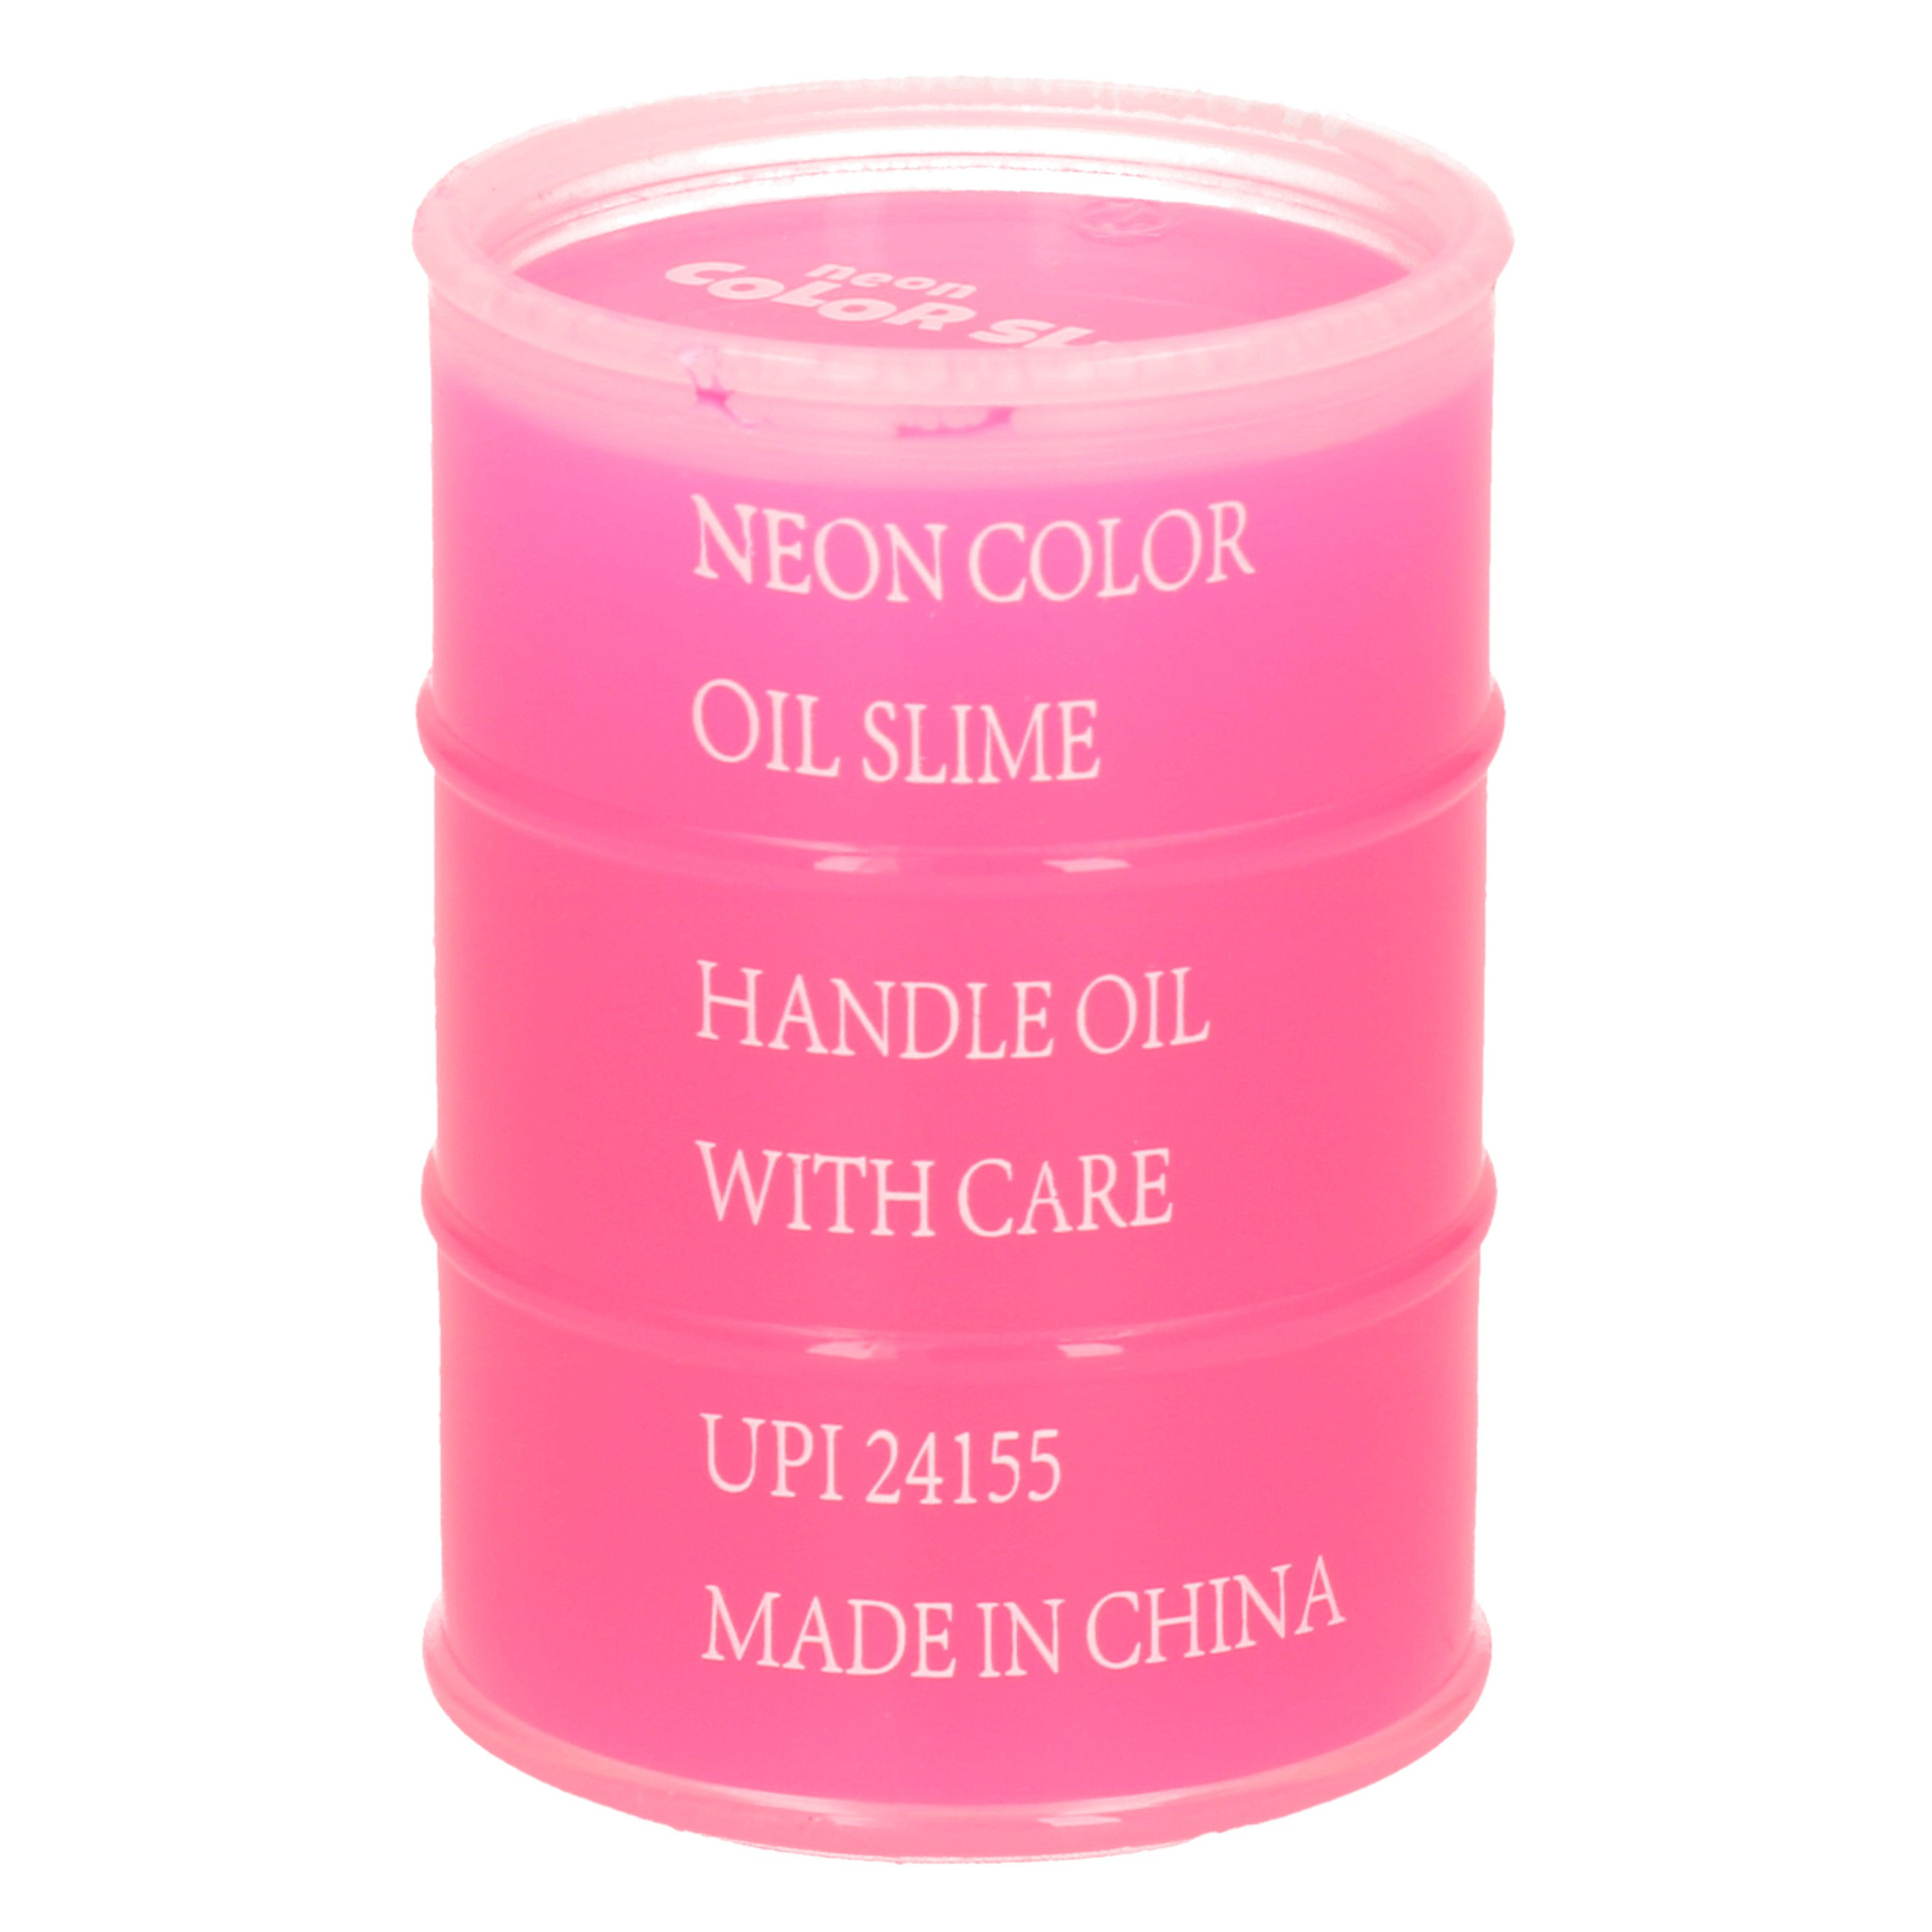 1x Potjes speelgoed/hobby slijm roze in olievat 5,5 x 8 cm 150 ml inhoud